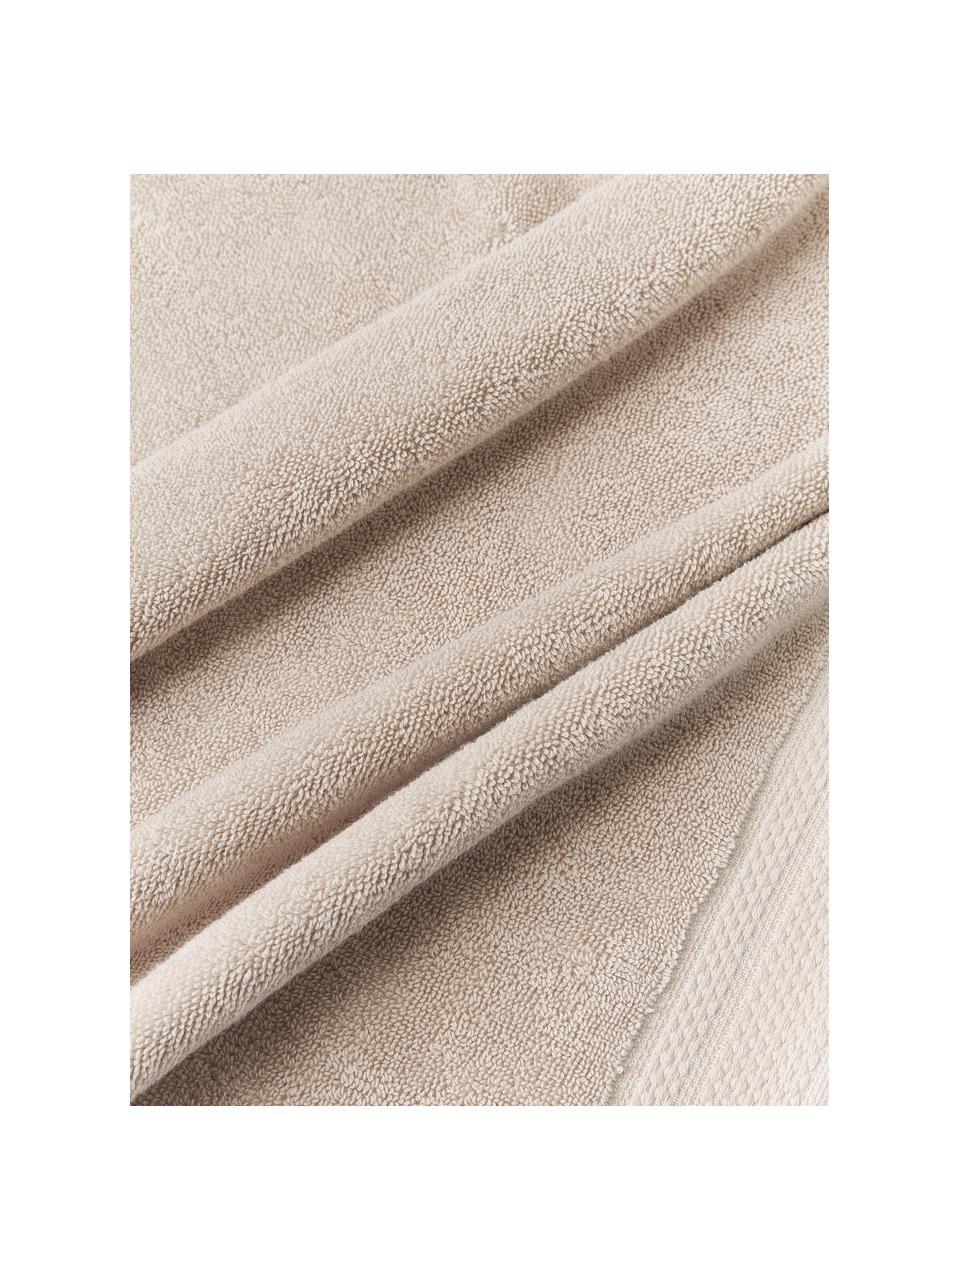 Handtuch Premium aus Bio-Baumwolle in verschiedenen Grössen, 100 % Bio-Baumwolle, GOTS-zertifiziert (von GCL International, GCL-300517)
 Schwere Qualität, 600 g/m², Hellbeige, Handtuch, B 50 x L 100 cm